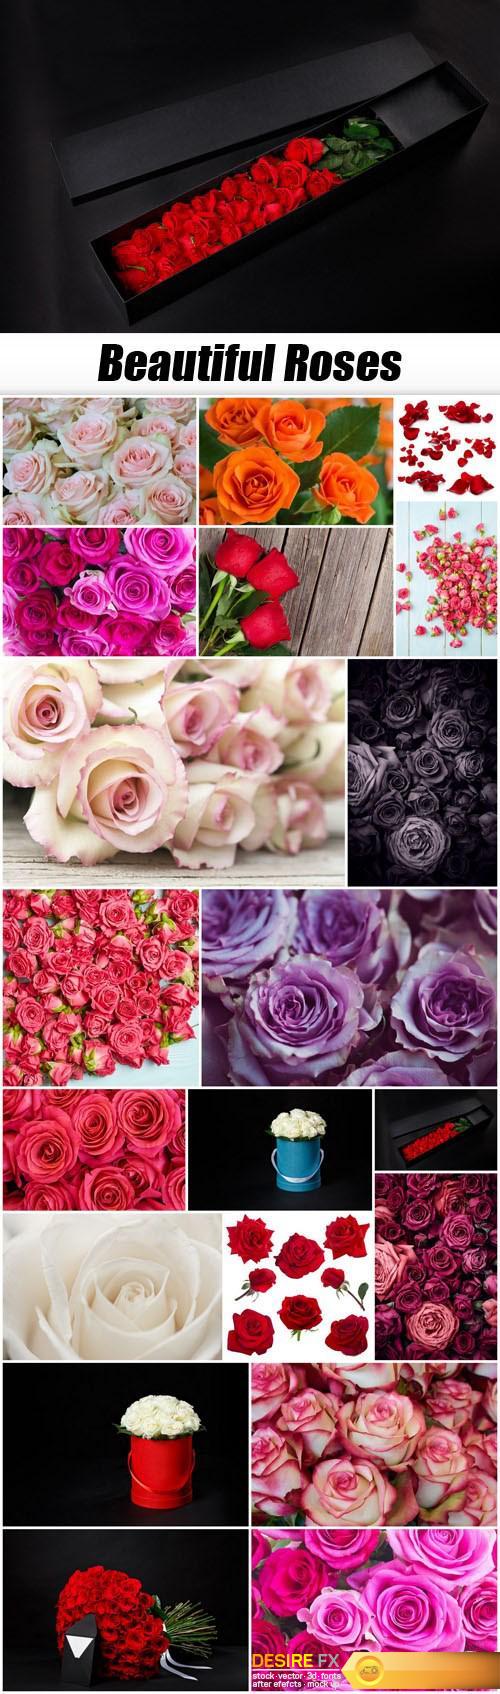 Beautiful Roses - 20xUHQ JPEG